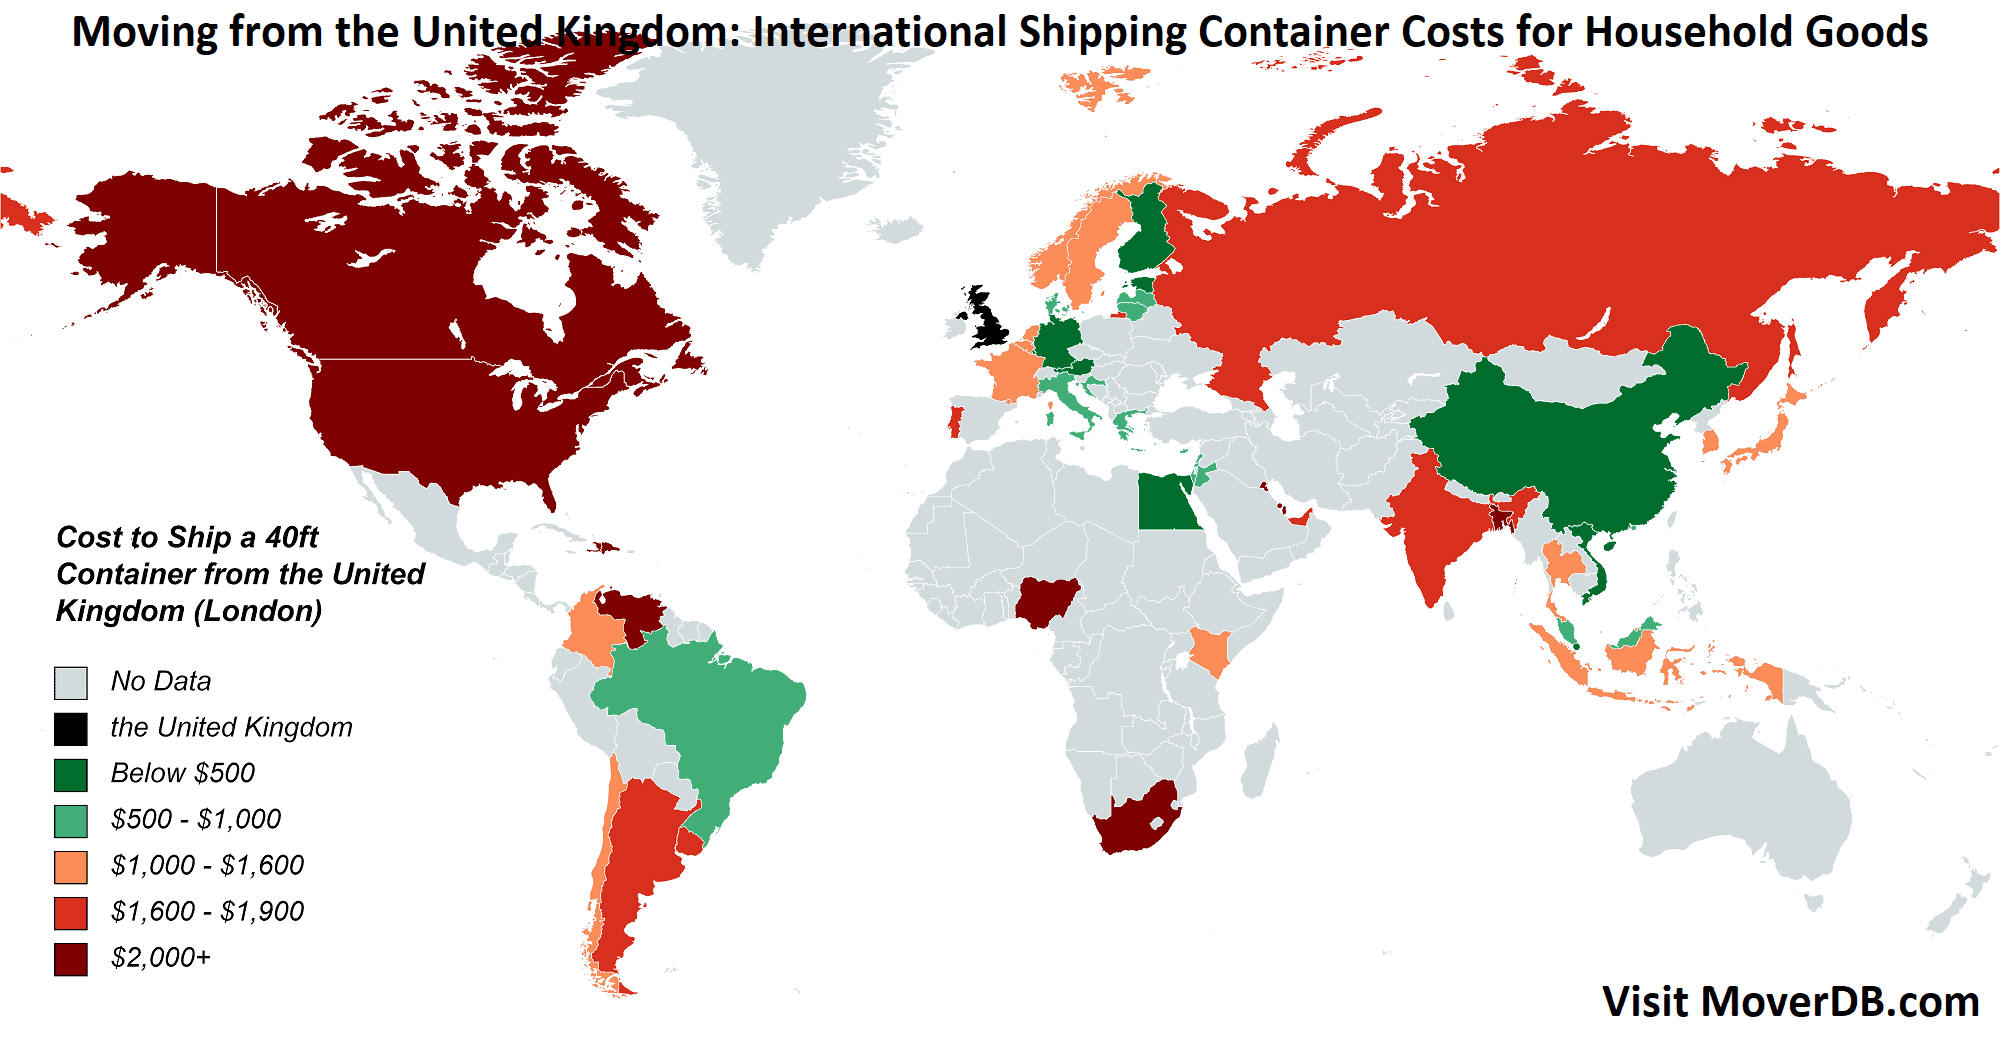 Kosten für Versandcontainer aus dem Vereinigten Königreich (London)